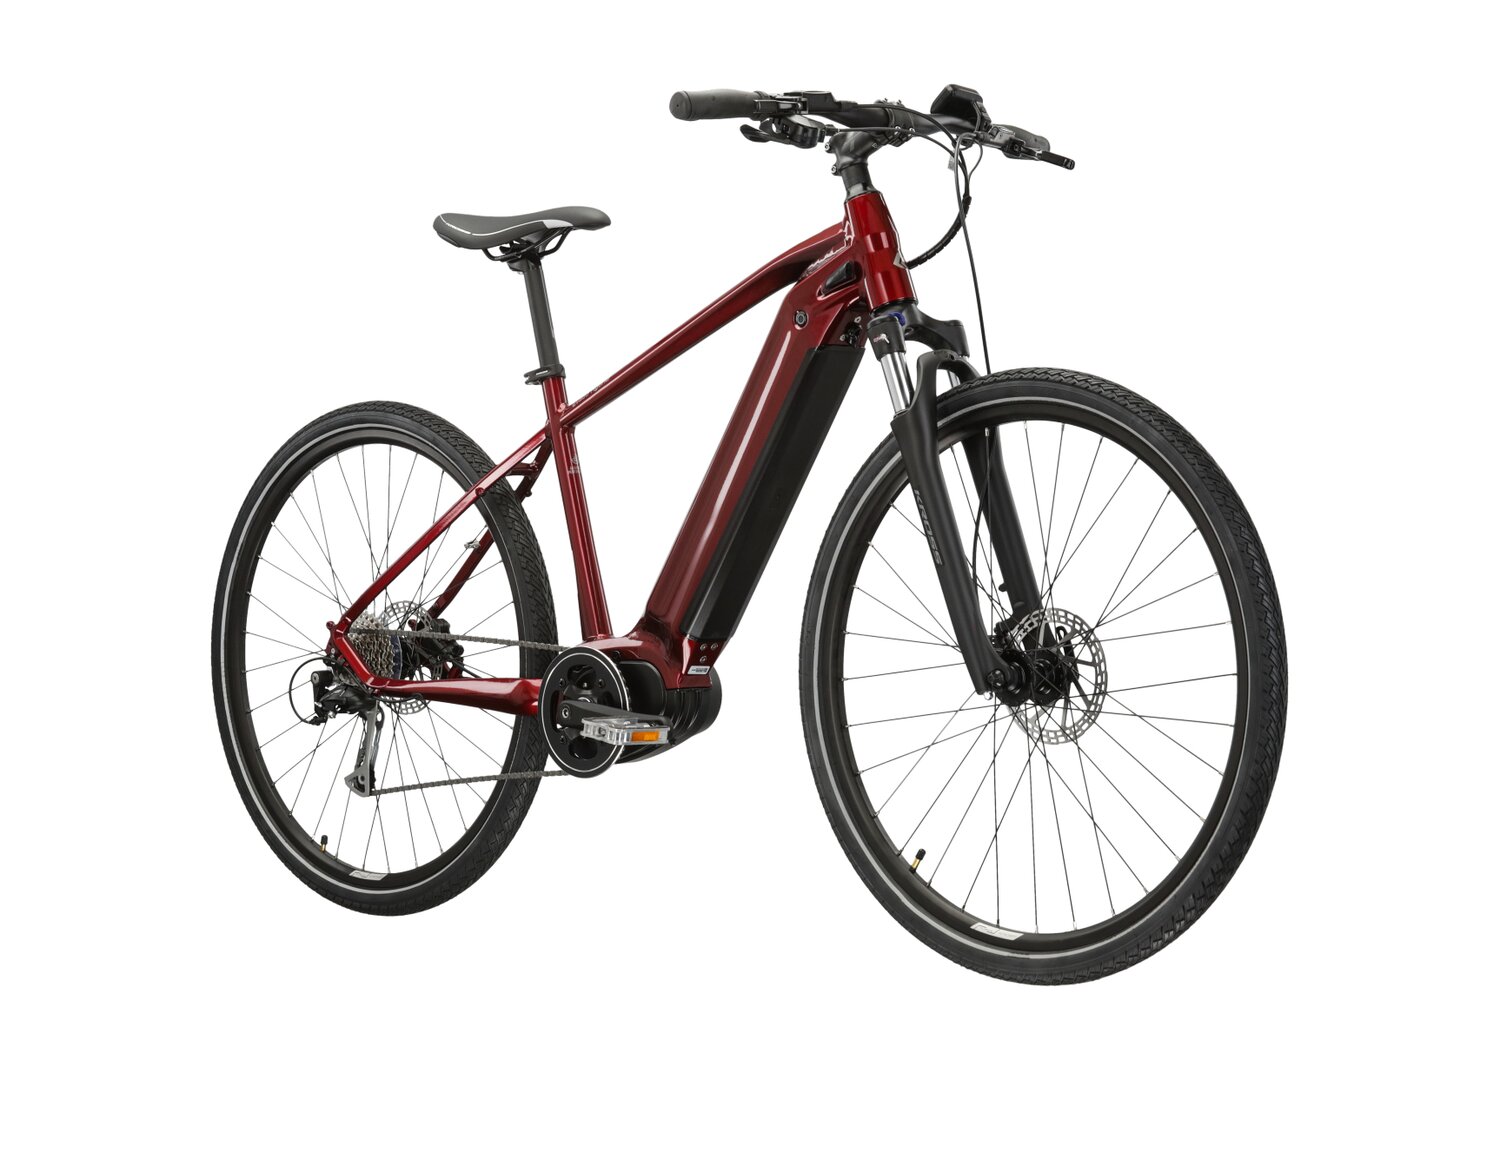  Elektryczny rower crossowy KROSS Evado Hybrid 2.0 730 Wh na aluminiowej ramie w kolorze rubinowym wyposażony w osprzęt Shimano i napęd elektryczny Bafang